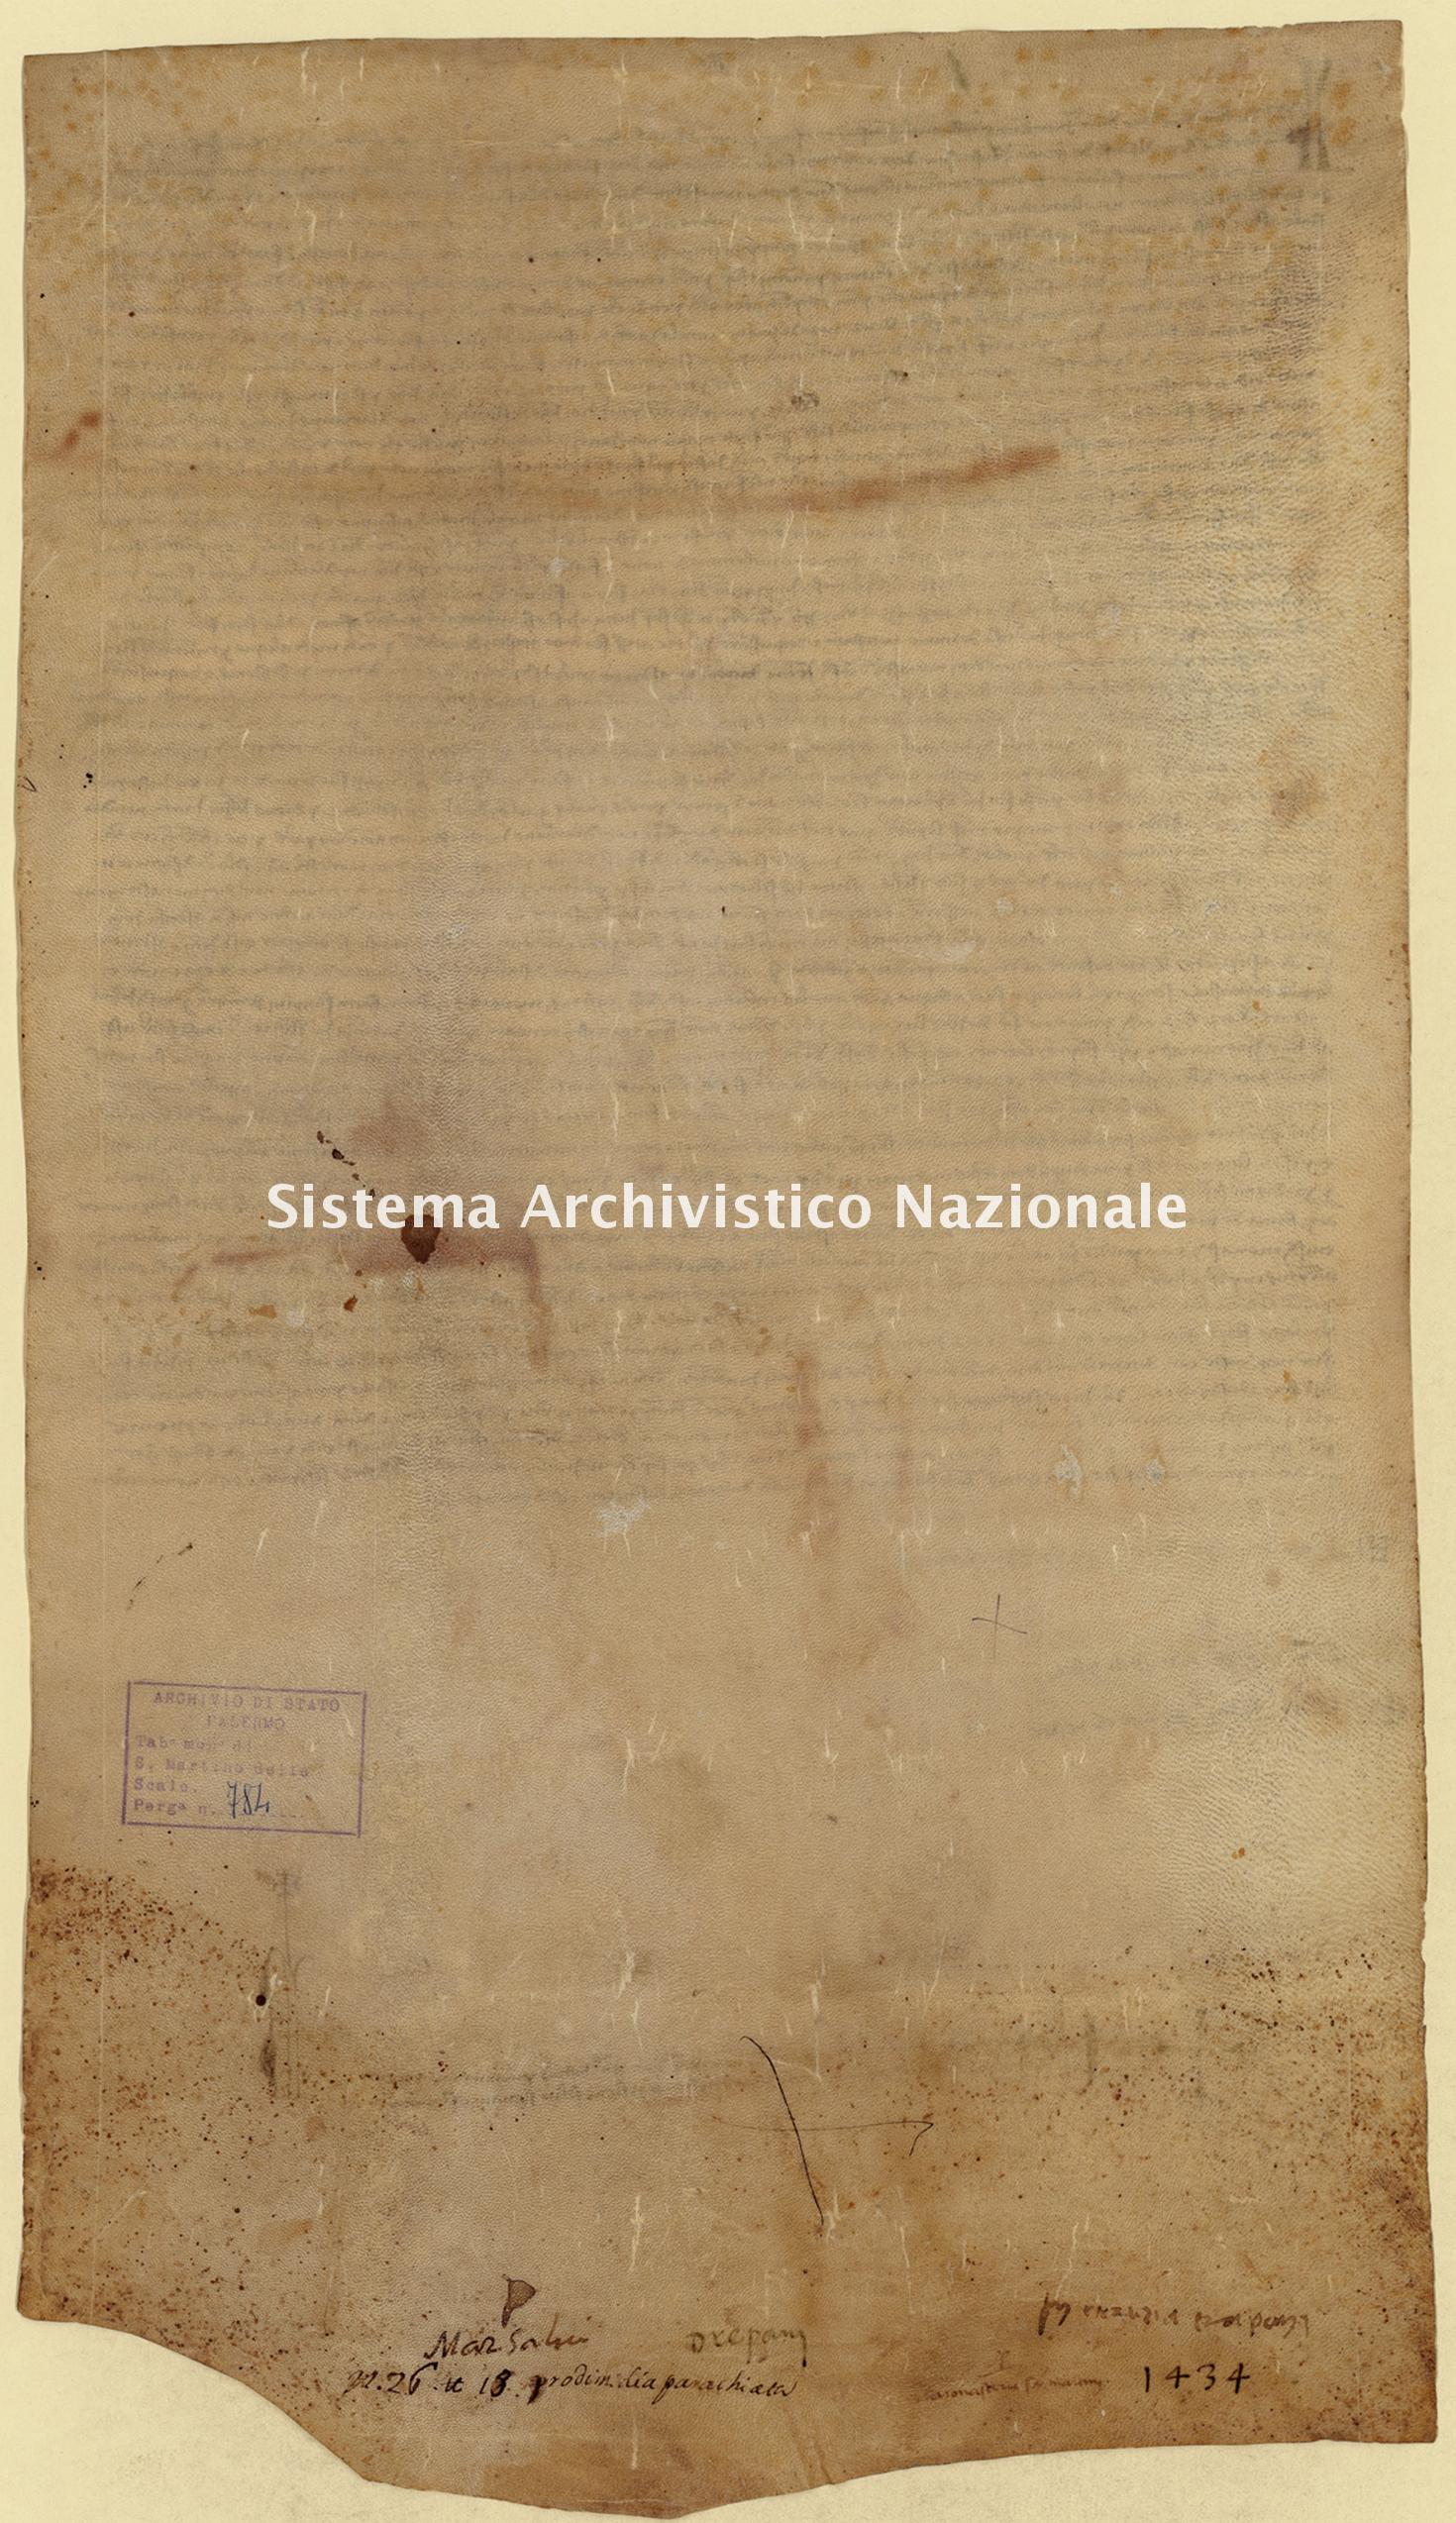 Archivio di Stato di Palermo, Diplomatico, Tabulario del monastero di San Martino delle Scale, Pergamena TSMS 0784